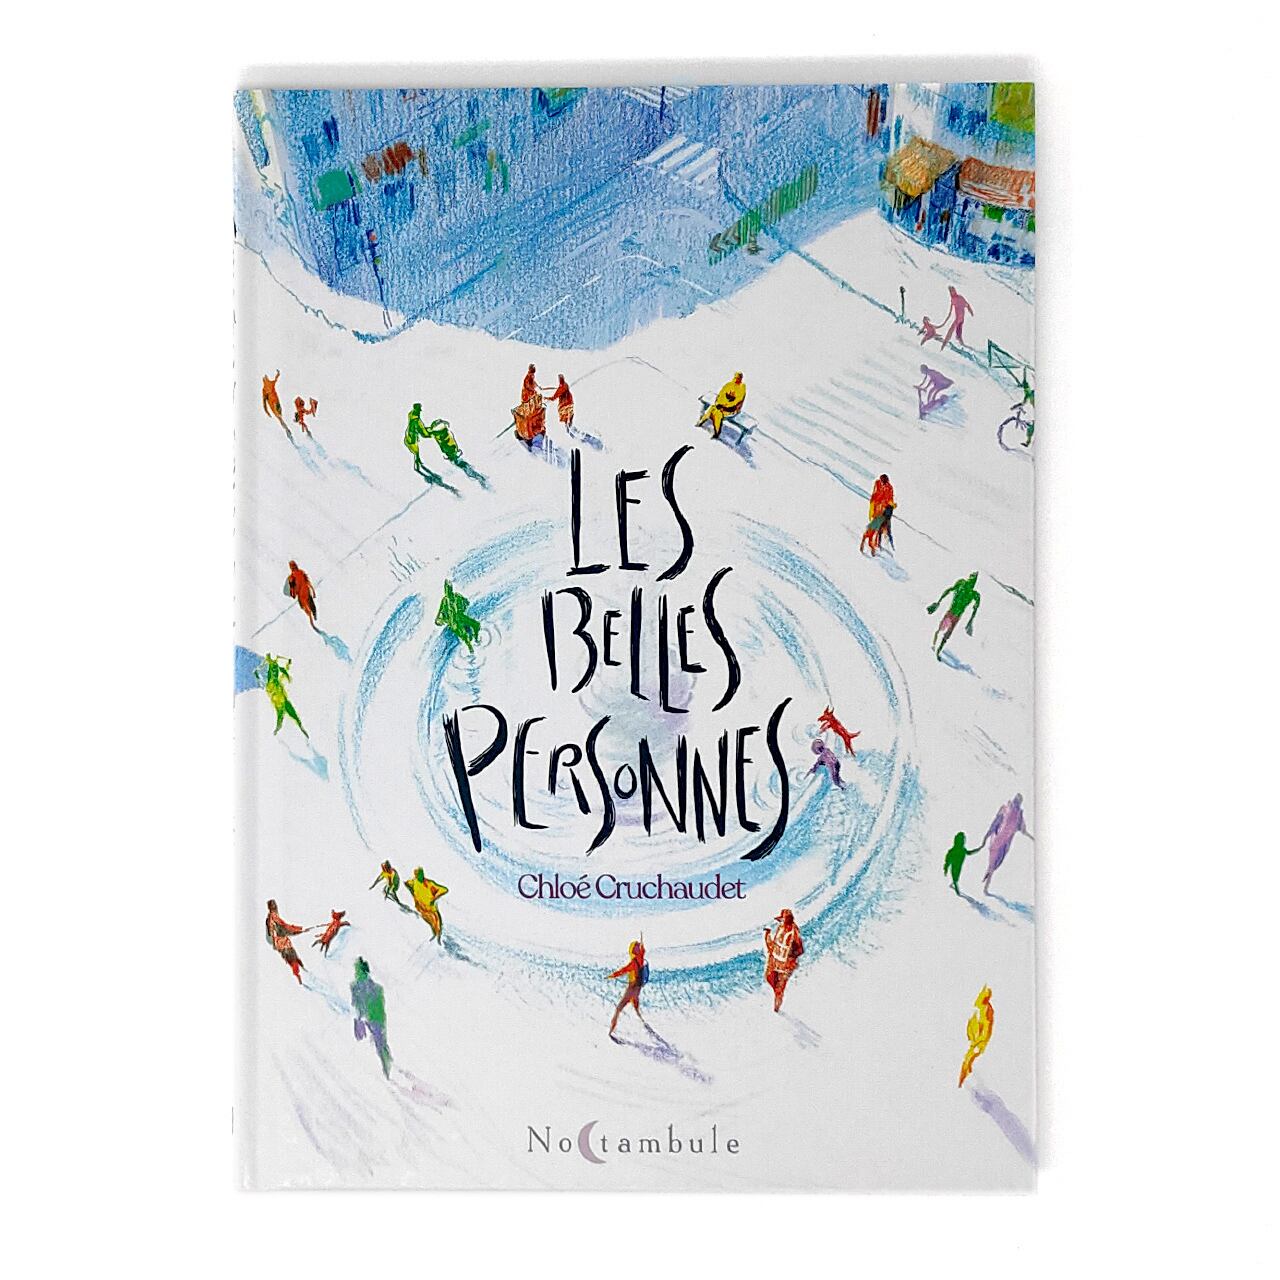 バンドデシネ「Les Belles personnes」BD作家Chloé Cruchaudet（クロエ・クルショデ）